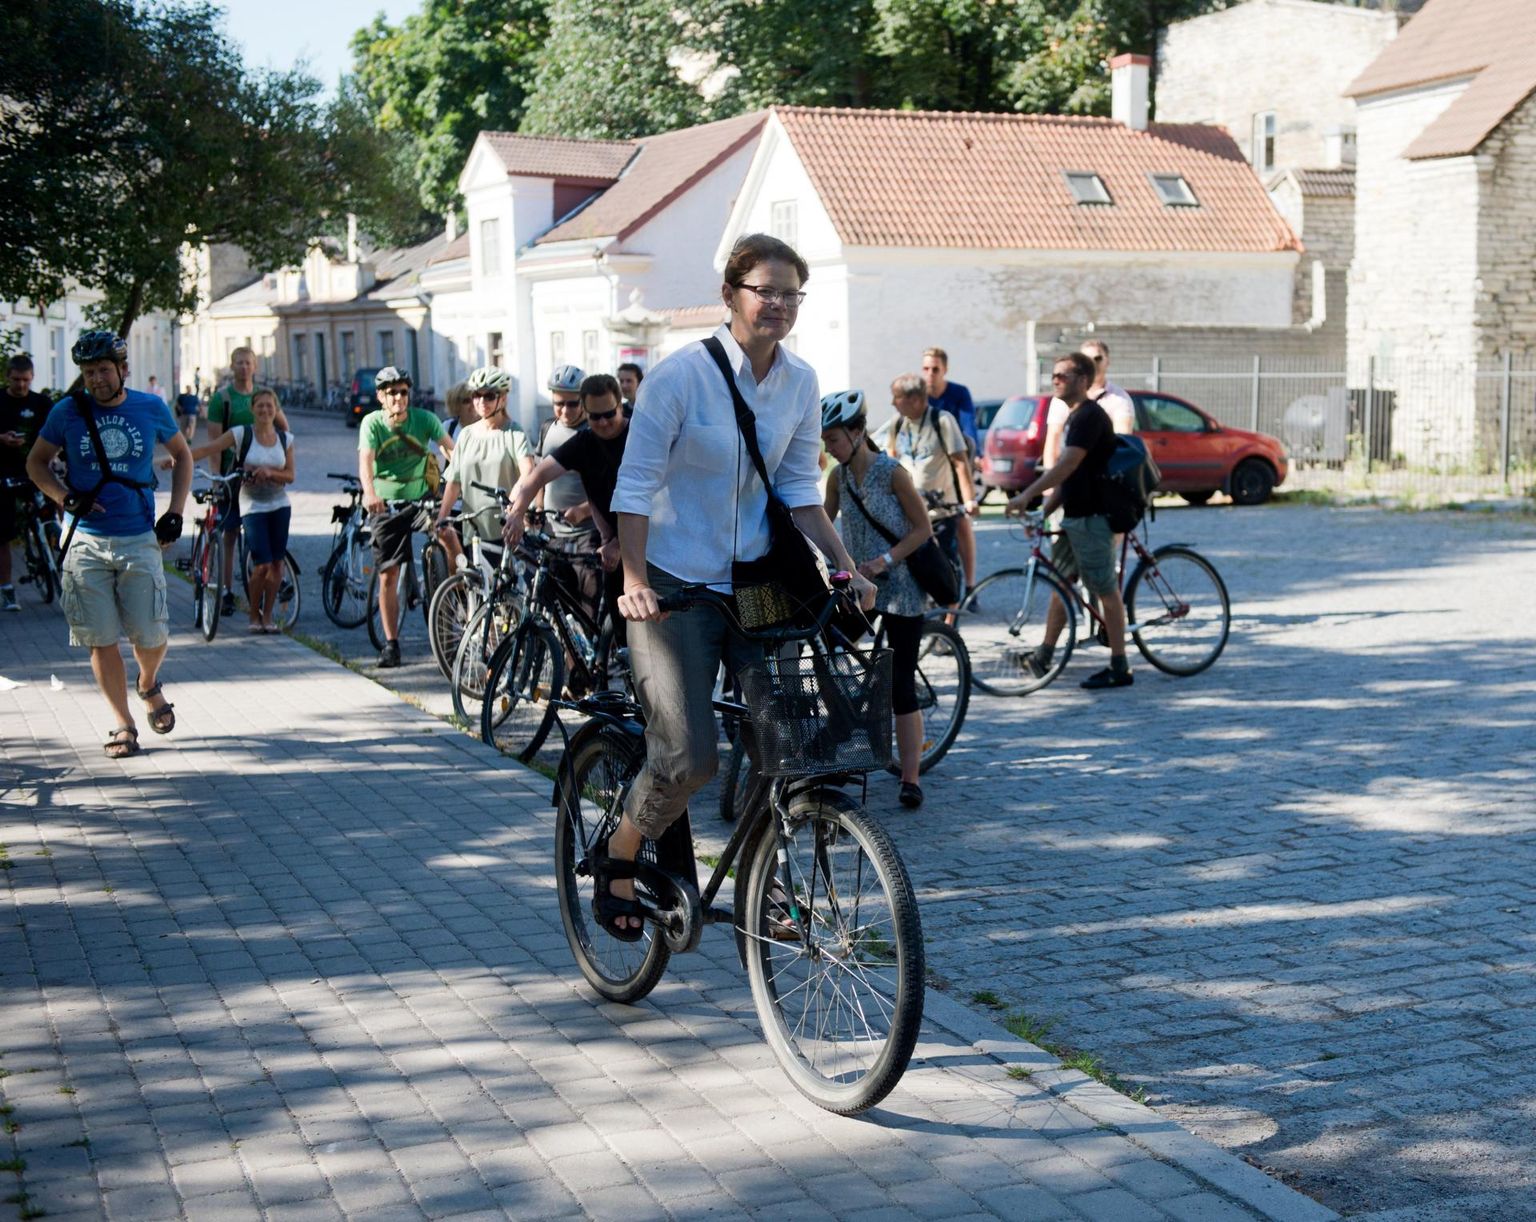 Helsingi linnaametnike rattaekskursioon Tallinna jalgrattateedel.
Helsingi arvutuste järgi iga kergliiklusteedesse investeeritud euro toob tagasi lausa kaheksa eurot.